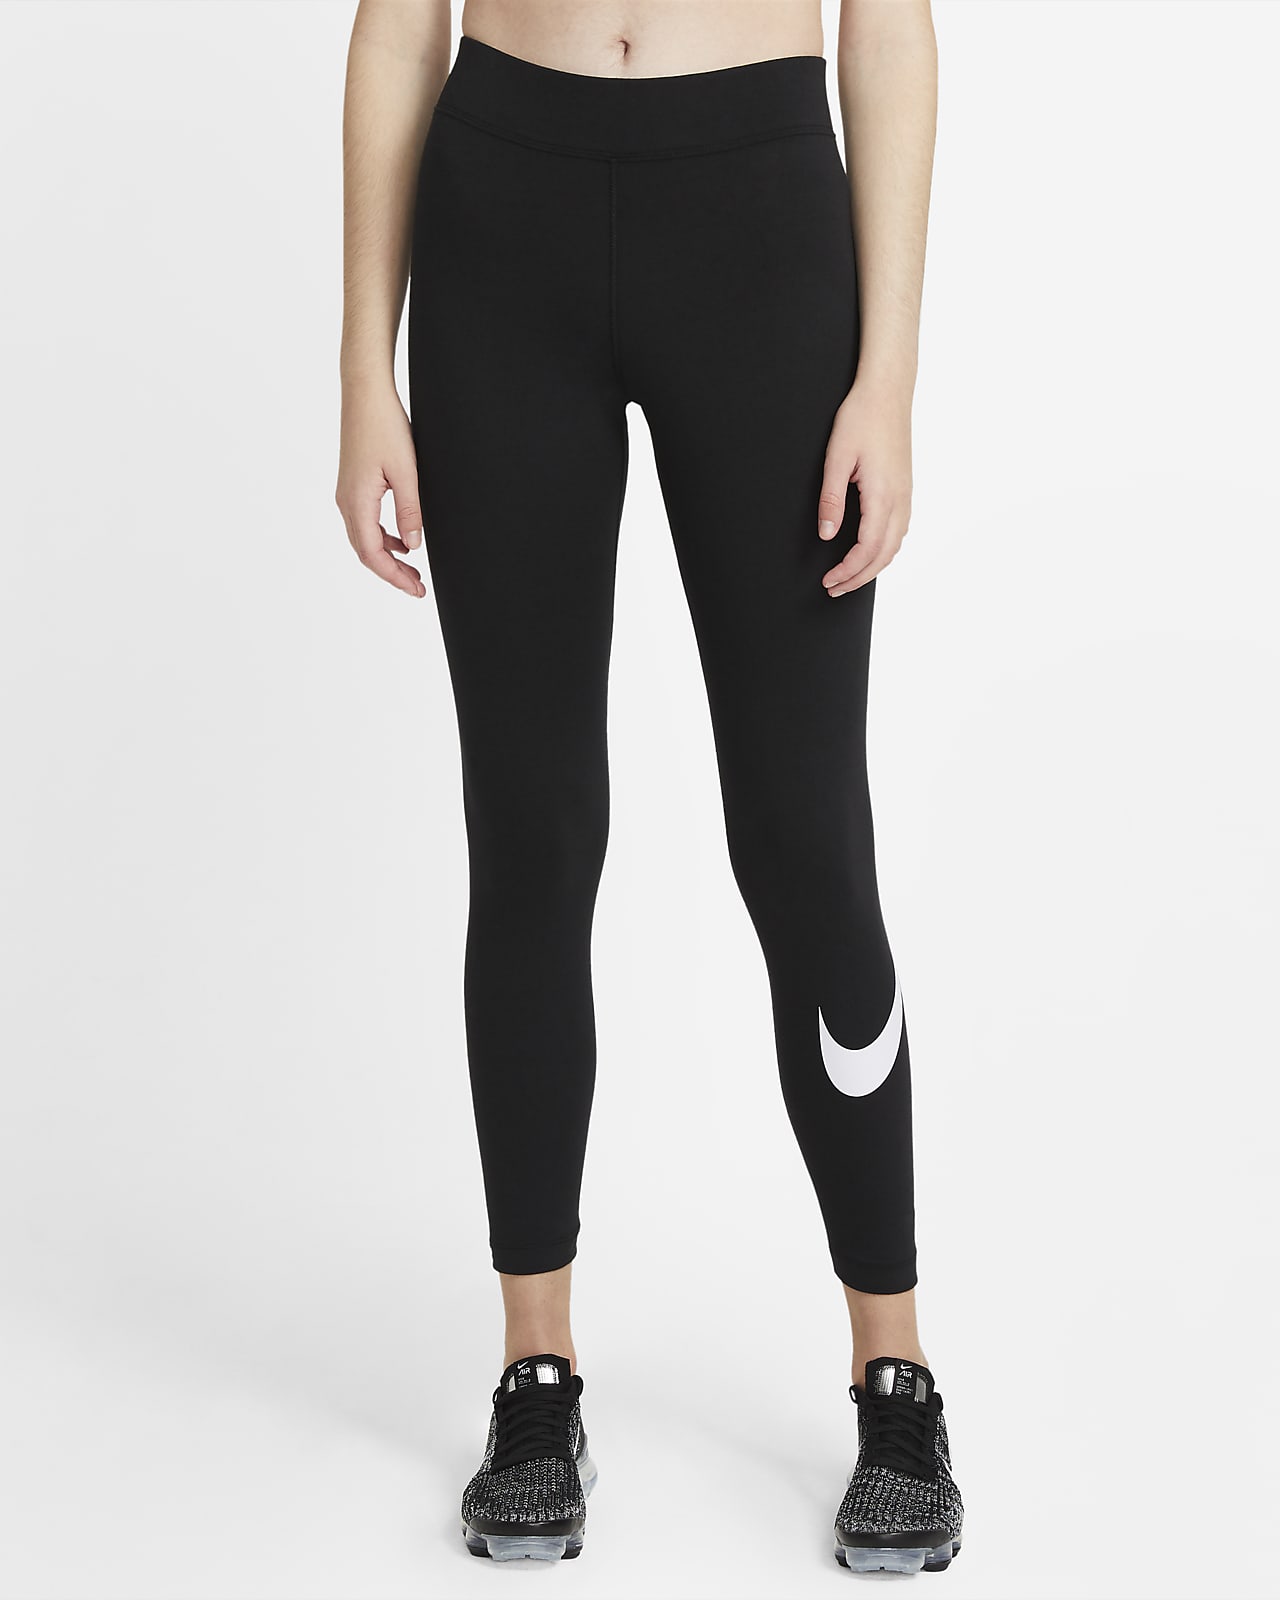 Excelente calcio tráfico Leggings con Swoosh de tiro medio para mujer Nike Sportswear Essential. Nike .com